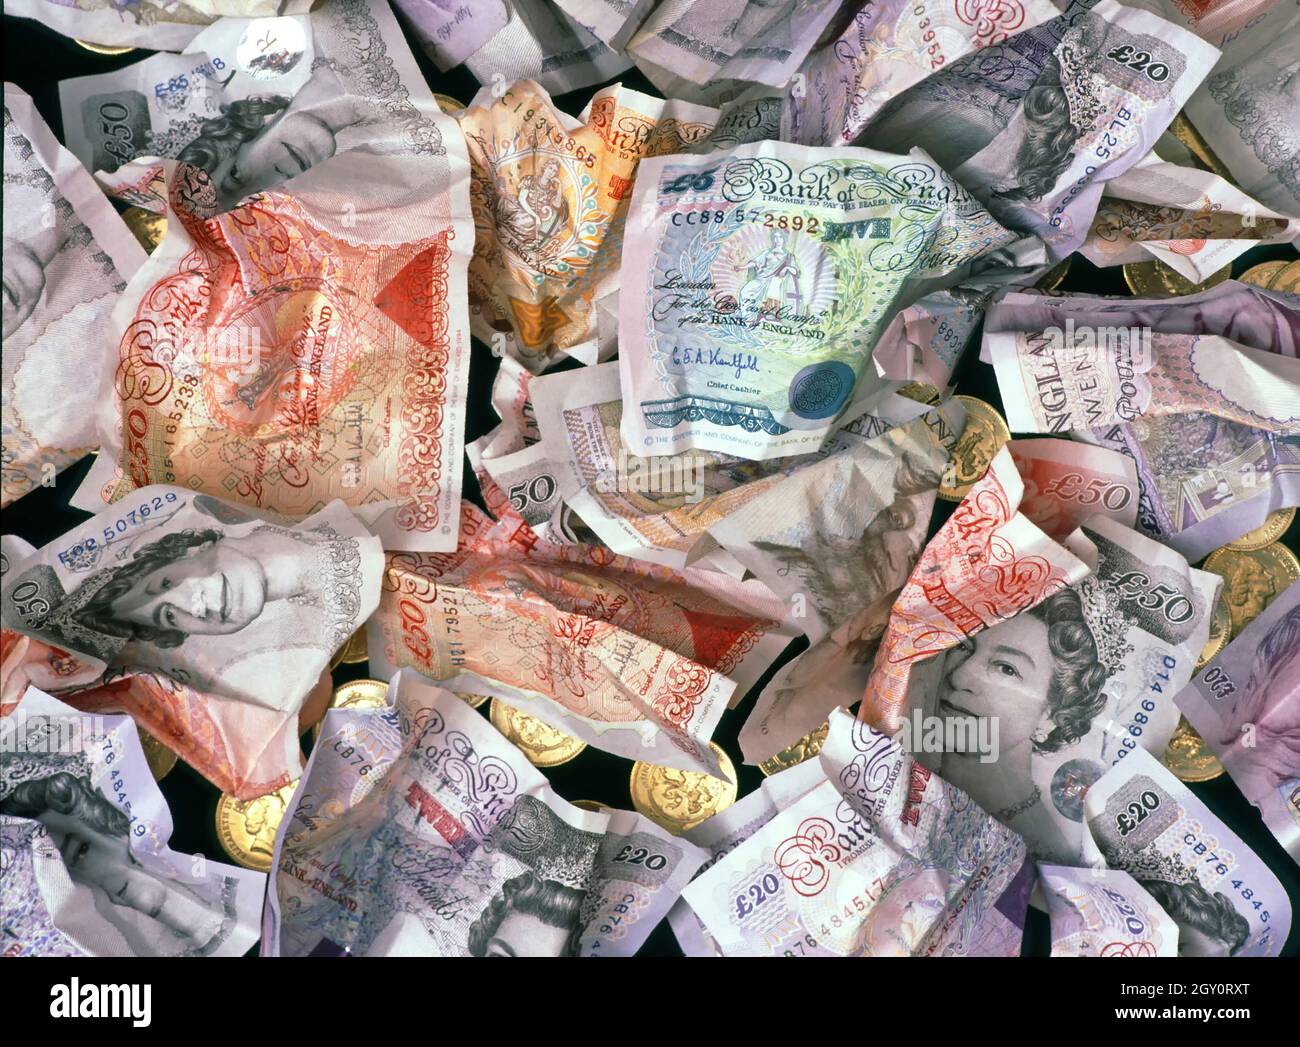 Primo piano immagine del concetto di fondo avvitato storico Regno Unito schiacciato buttato via obsolete e ridondanti banconote in carta sterlina in un'età di plastica e scheda Foto Stock